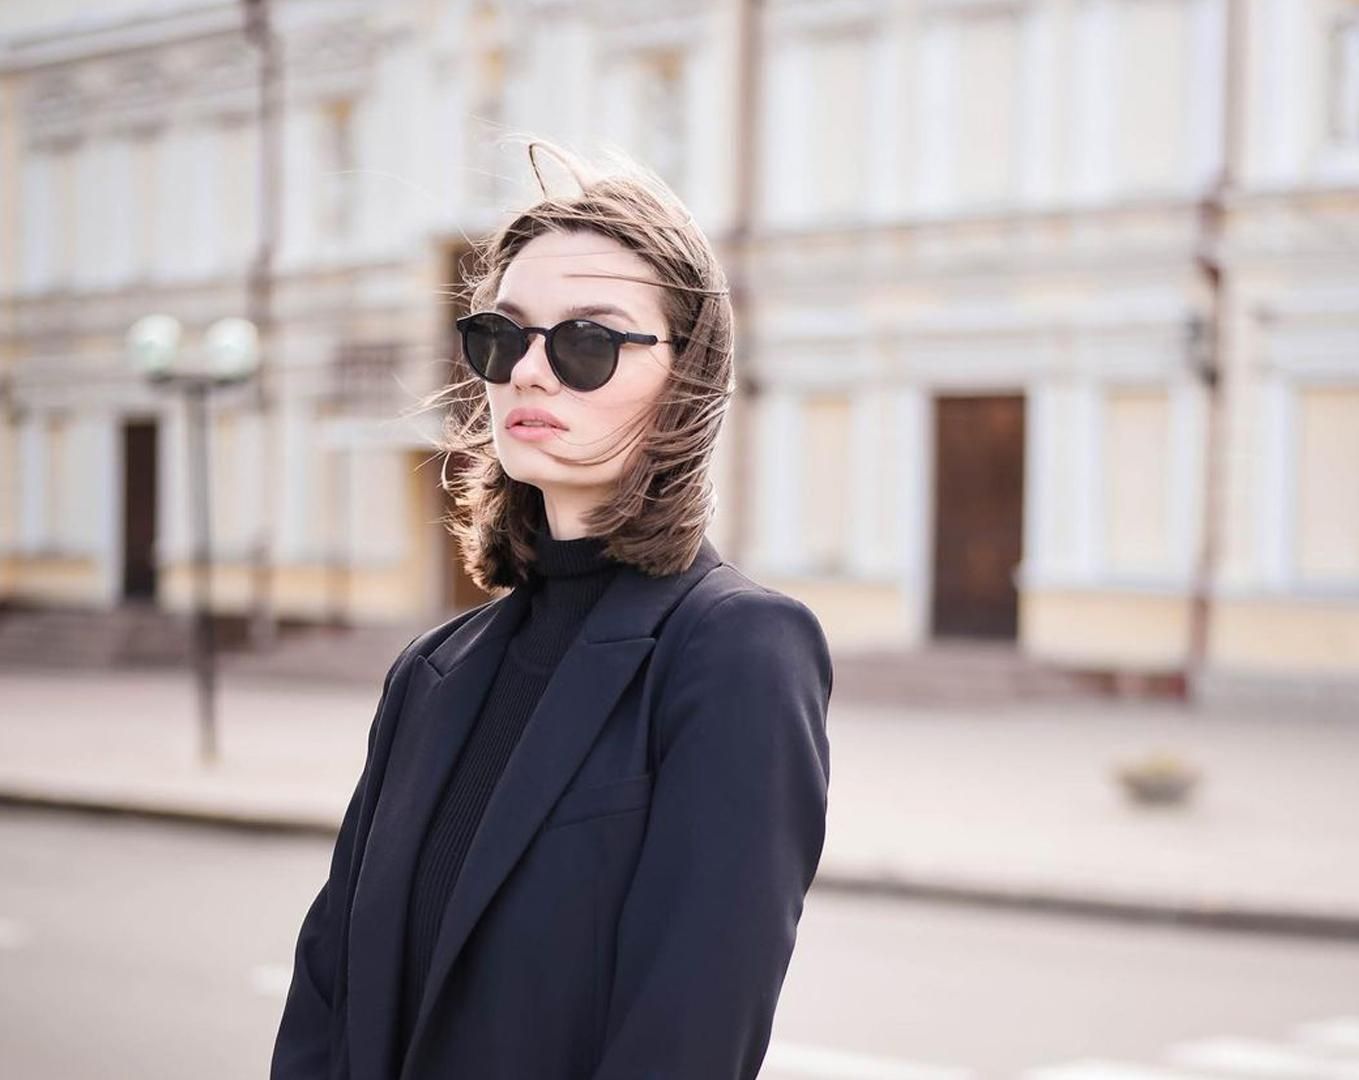 Таня Брык – горячие фото участницы Супер Топ-модель по-украински